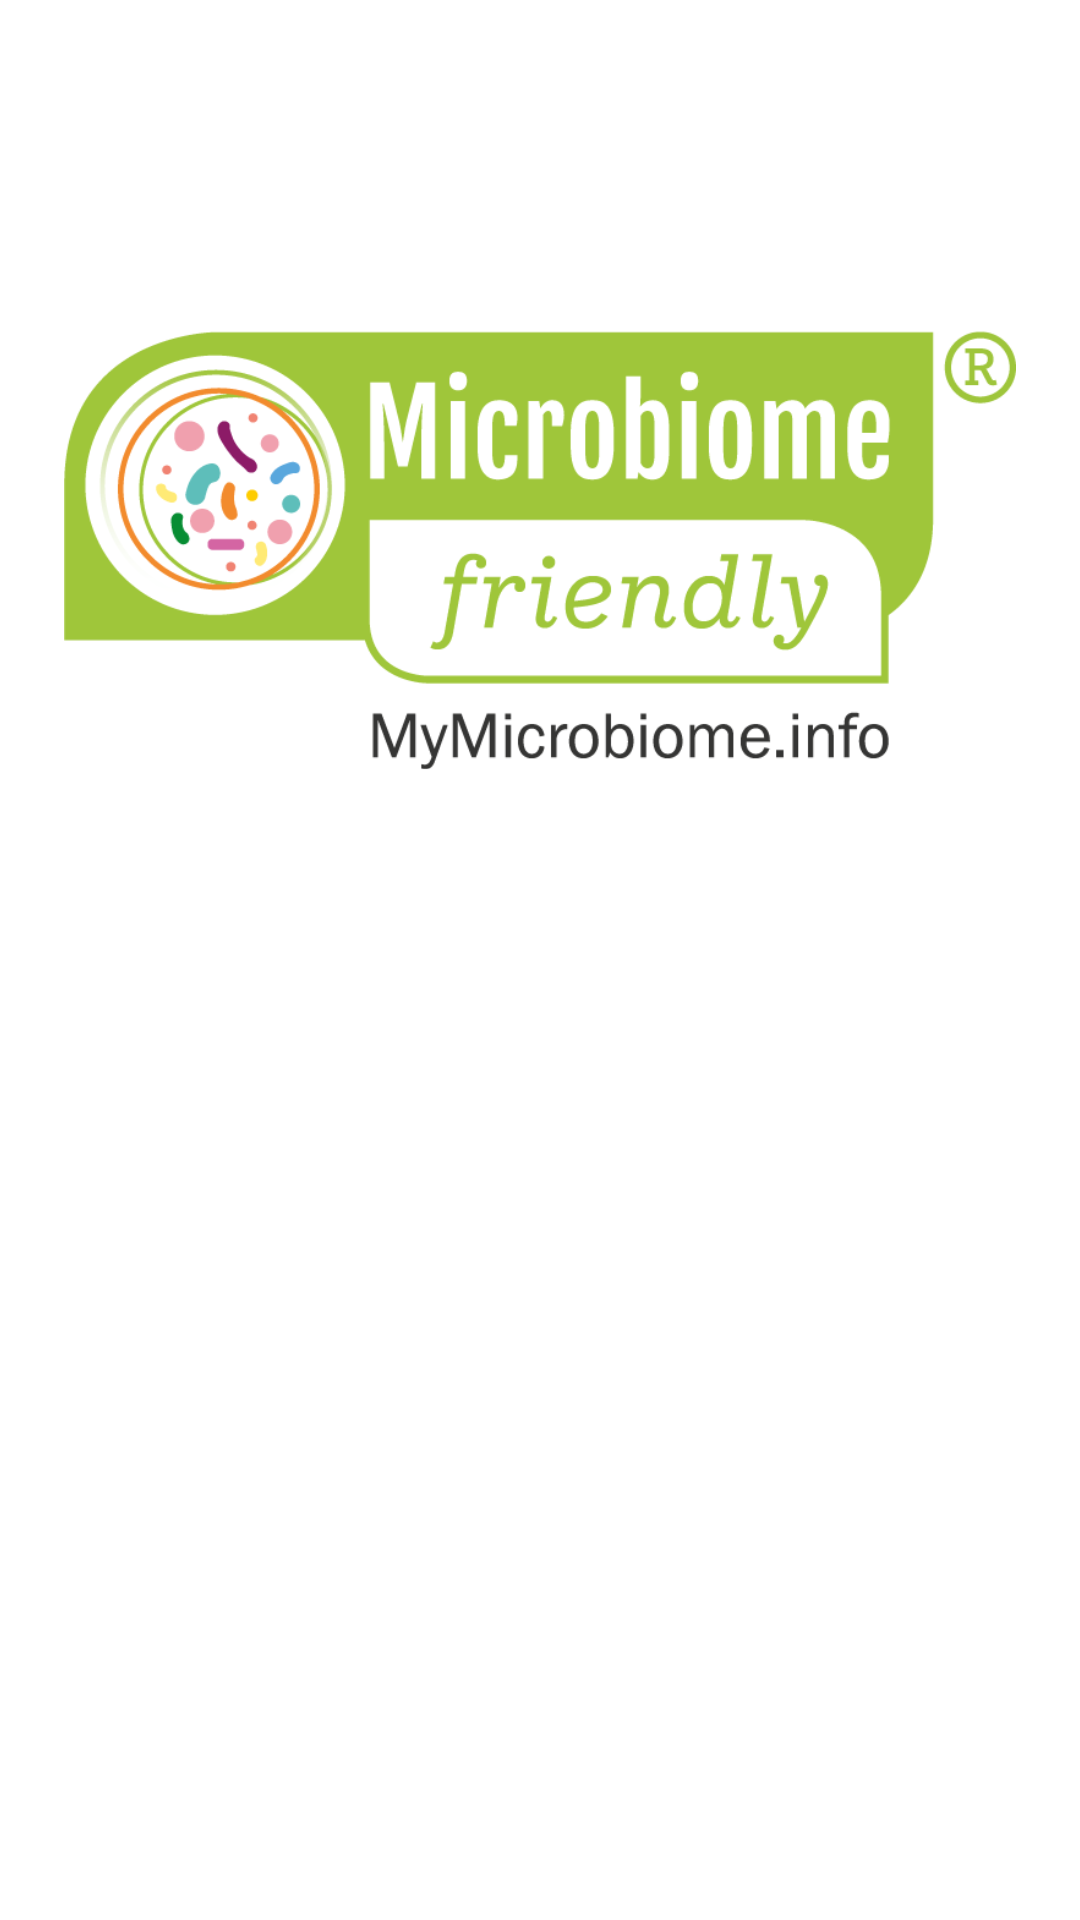 Presentamos conservantes y multifuncionales respetuosos con el microbioma: Conservación eficaz y segura para su flora natural 